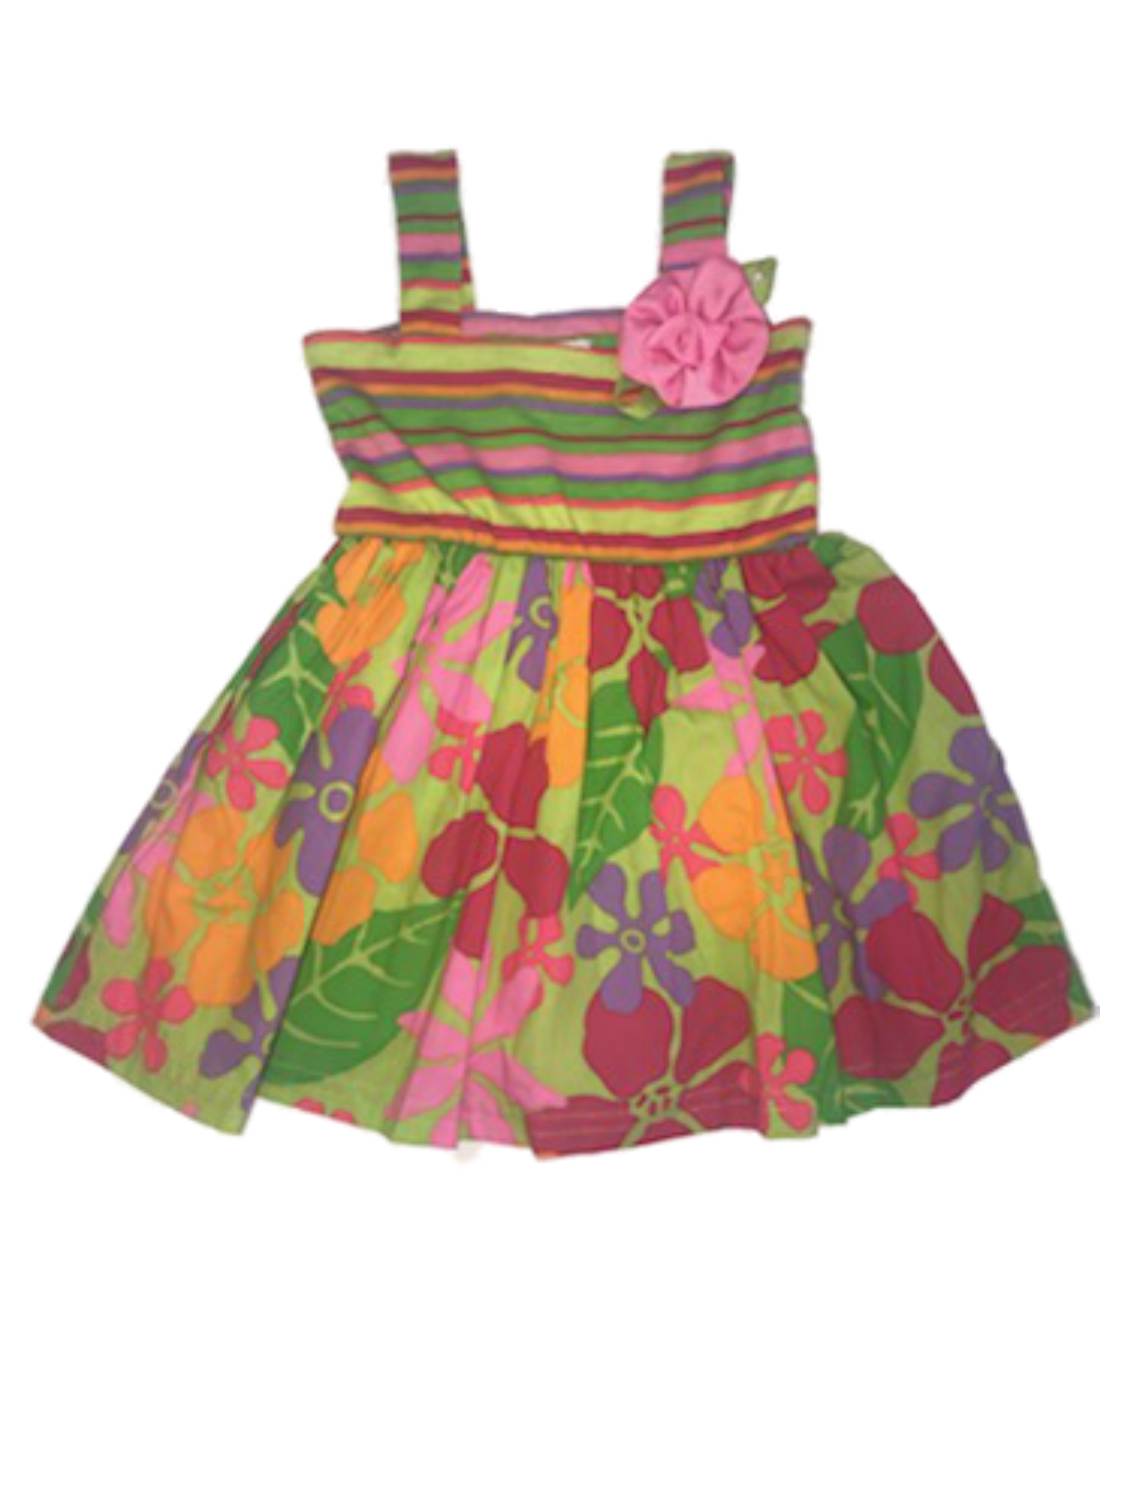 Youngland Infant Girls Green Flower & Stripes Sun Dress Floral Summer Dress 12M